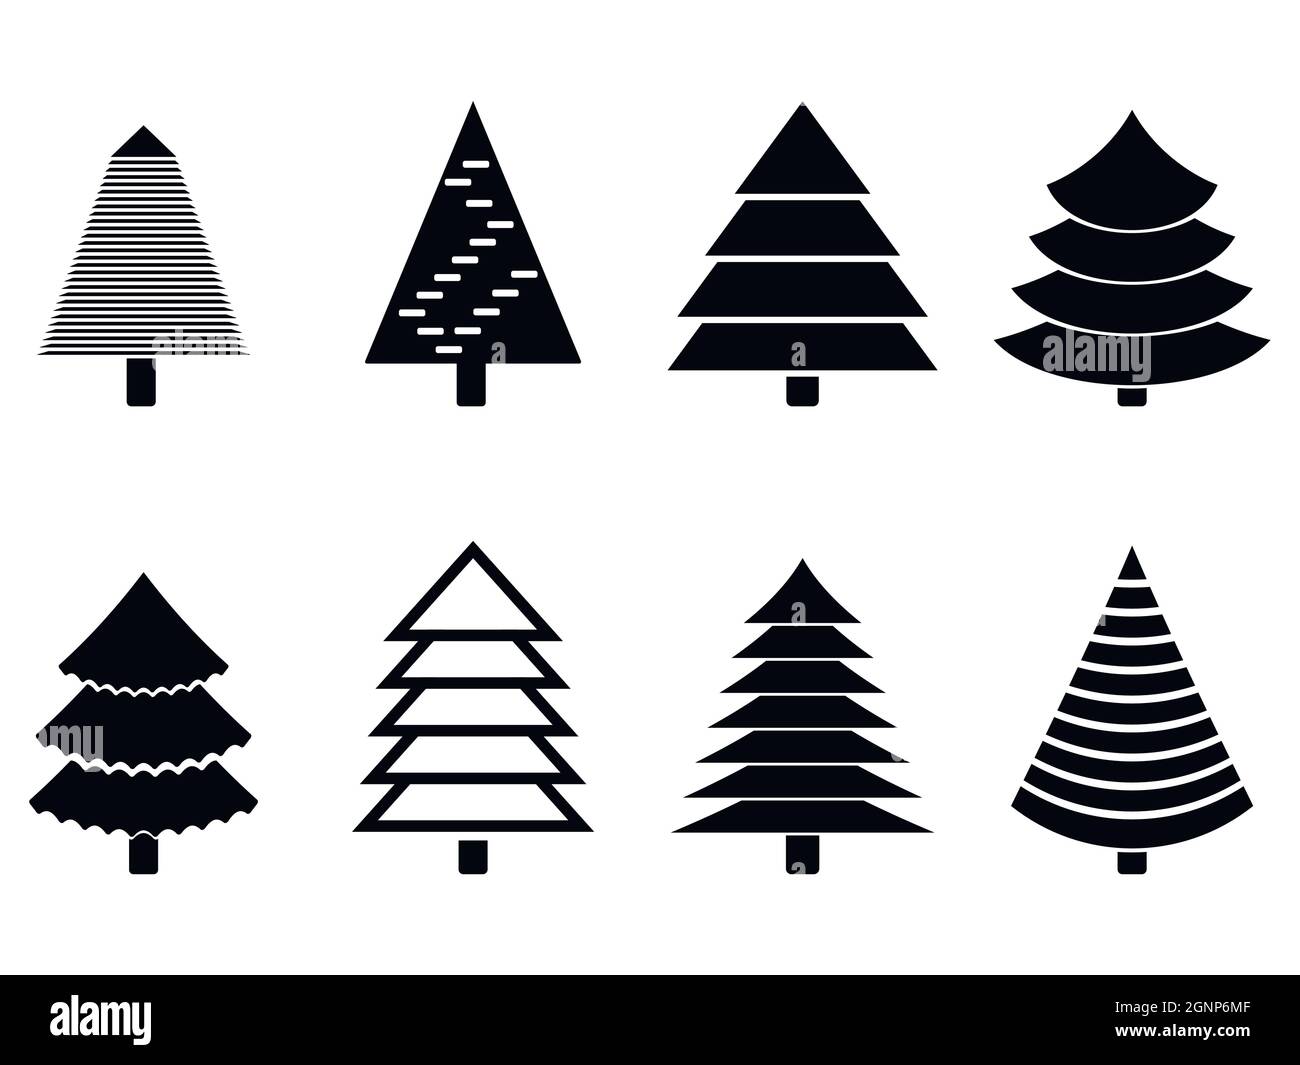 Weihnachtsbaum schwarz Silhouette Kollektion. Vektor schwarz weiß Silhouette immergrünen Baum zu Winterurlaub Neujahr Weihnachten und Grußkarte, Traditiona Stock Vektor